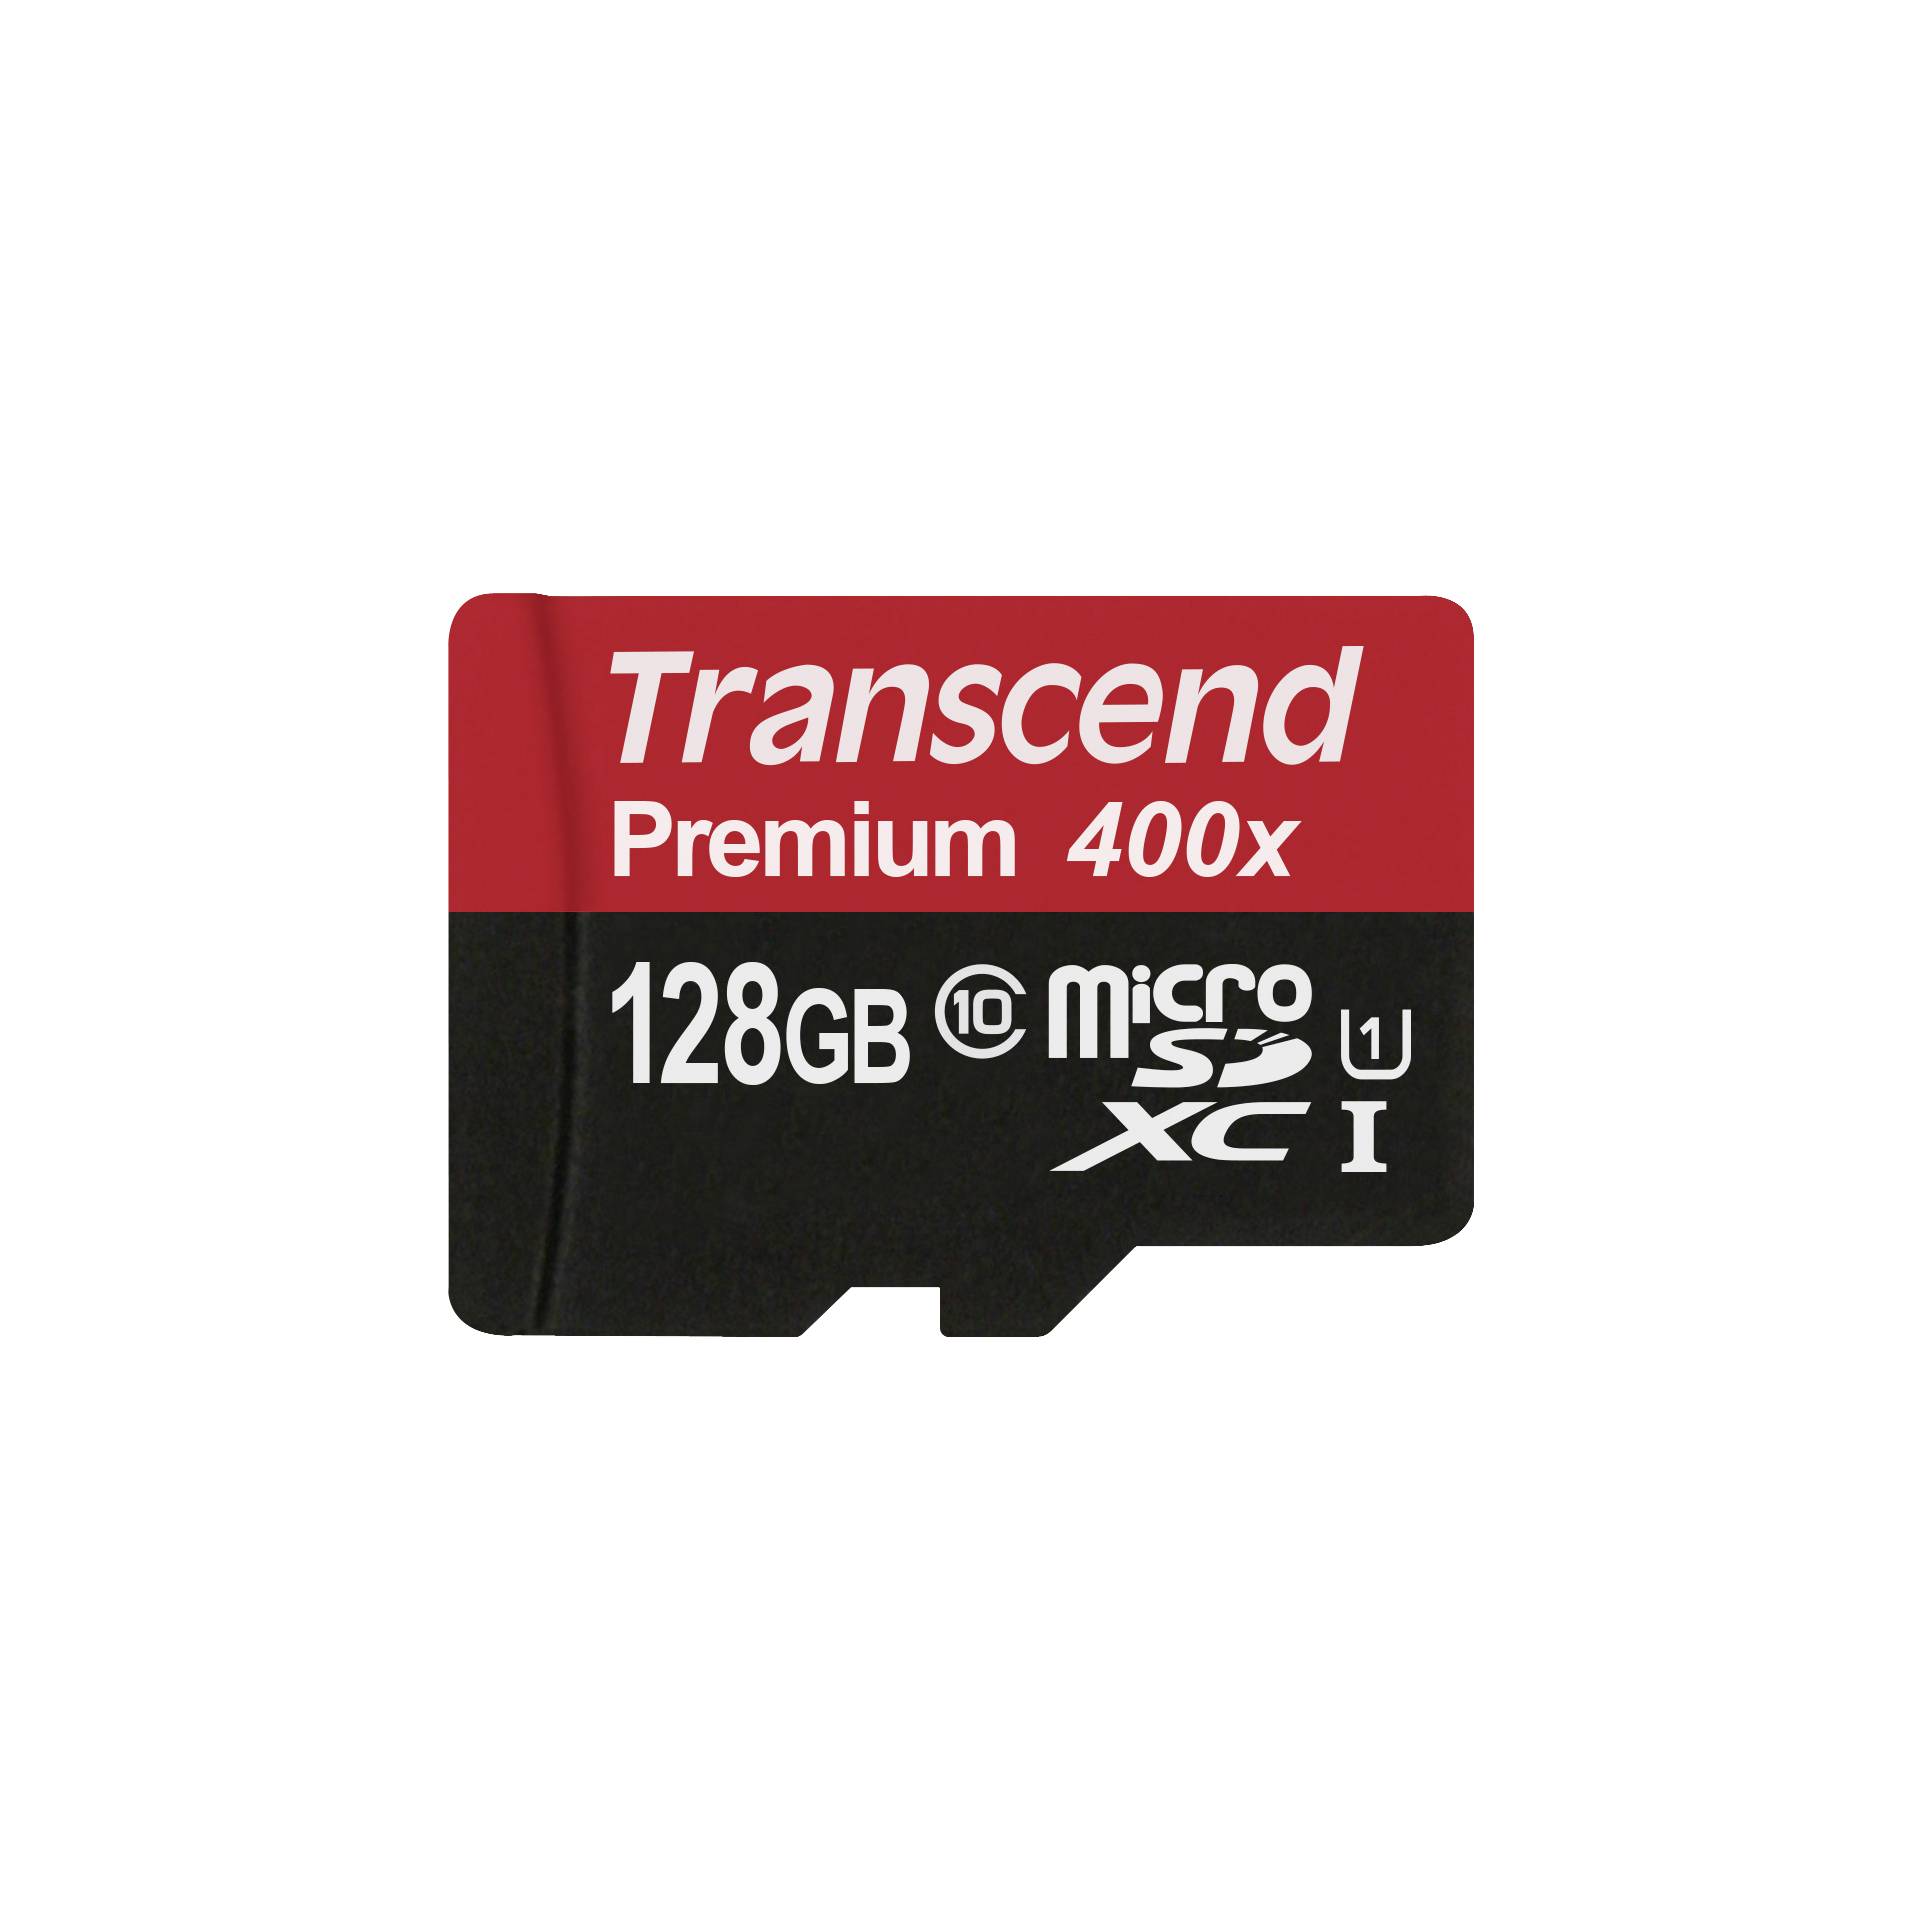 Transcend microSDXC 128GB Class 10 UHS-I 400x + SD adatt.